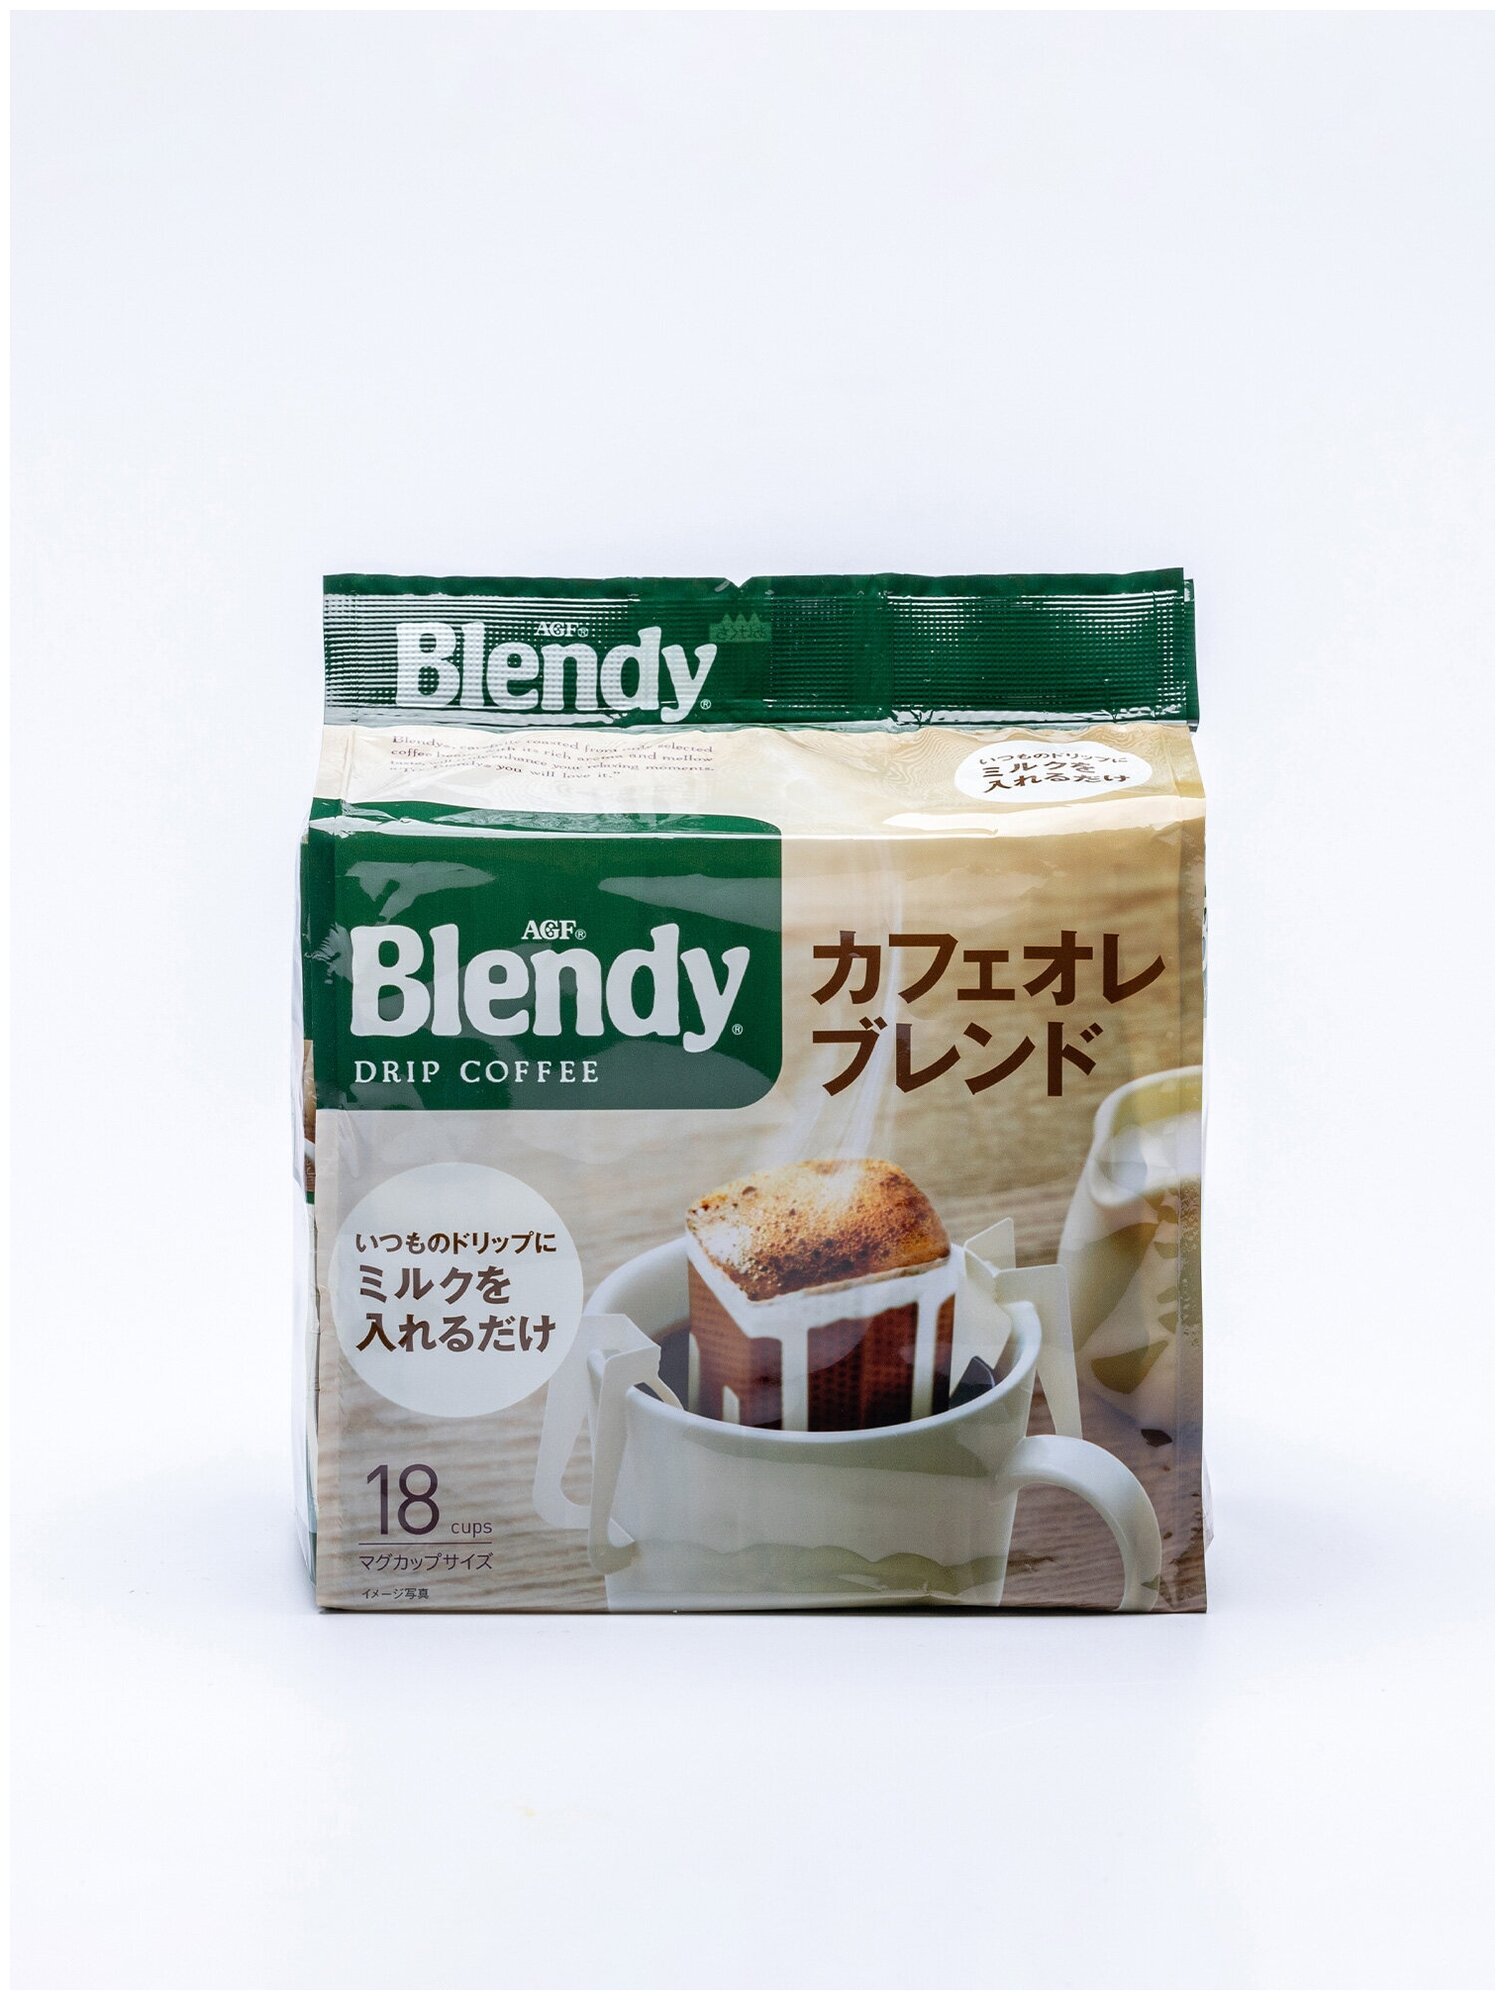 AGF в дрип-пакетах Японский кофе Бленди Идеальная смесь DRIP BLENDY CAFE AU LAIT 18 шт. по 7 гр.